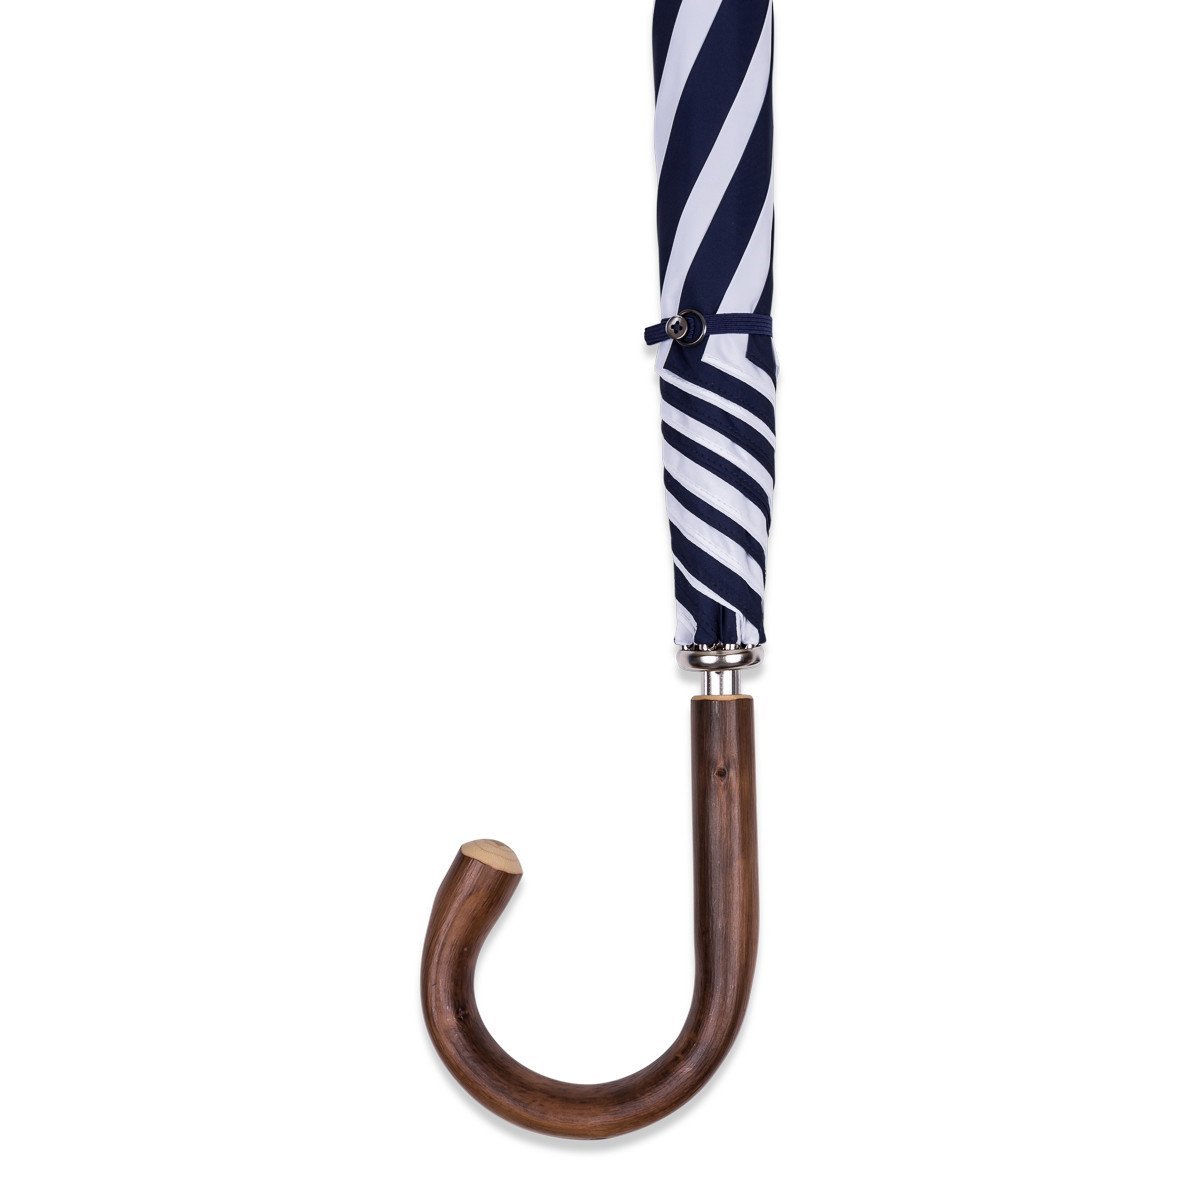 Fox Umbrellas - Paraplu, Blue & White, Parapluie | NEW TAILOR Webshop